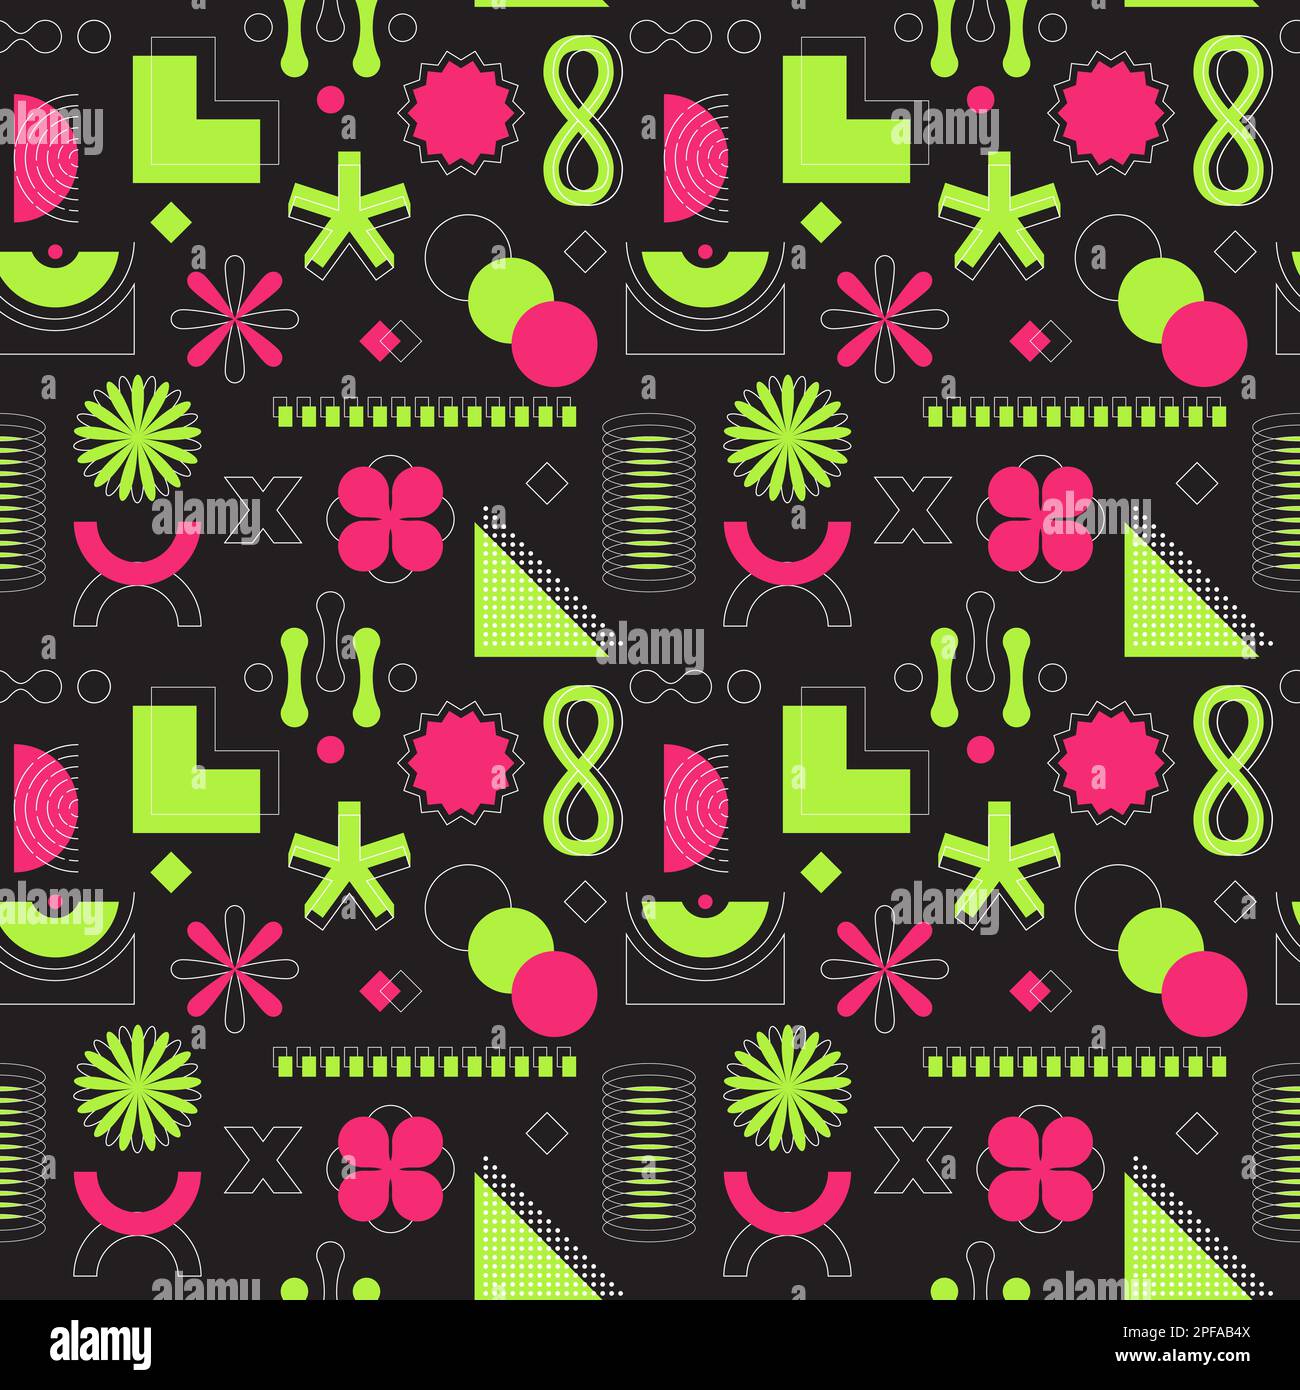 Leuchtendes pinkfarbenes und grünes Neon, saures, nahtloses Muster. Abstrakte geometrische Formen, fette, lineare Objekte. Brutalismus, Retro-Futurismus-Stil. Für Webdesign, Stock Vektor